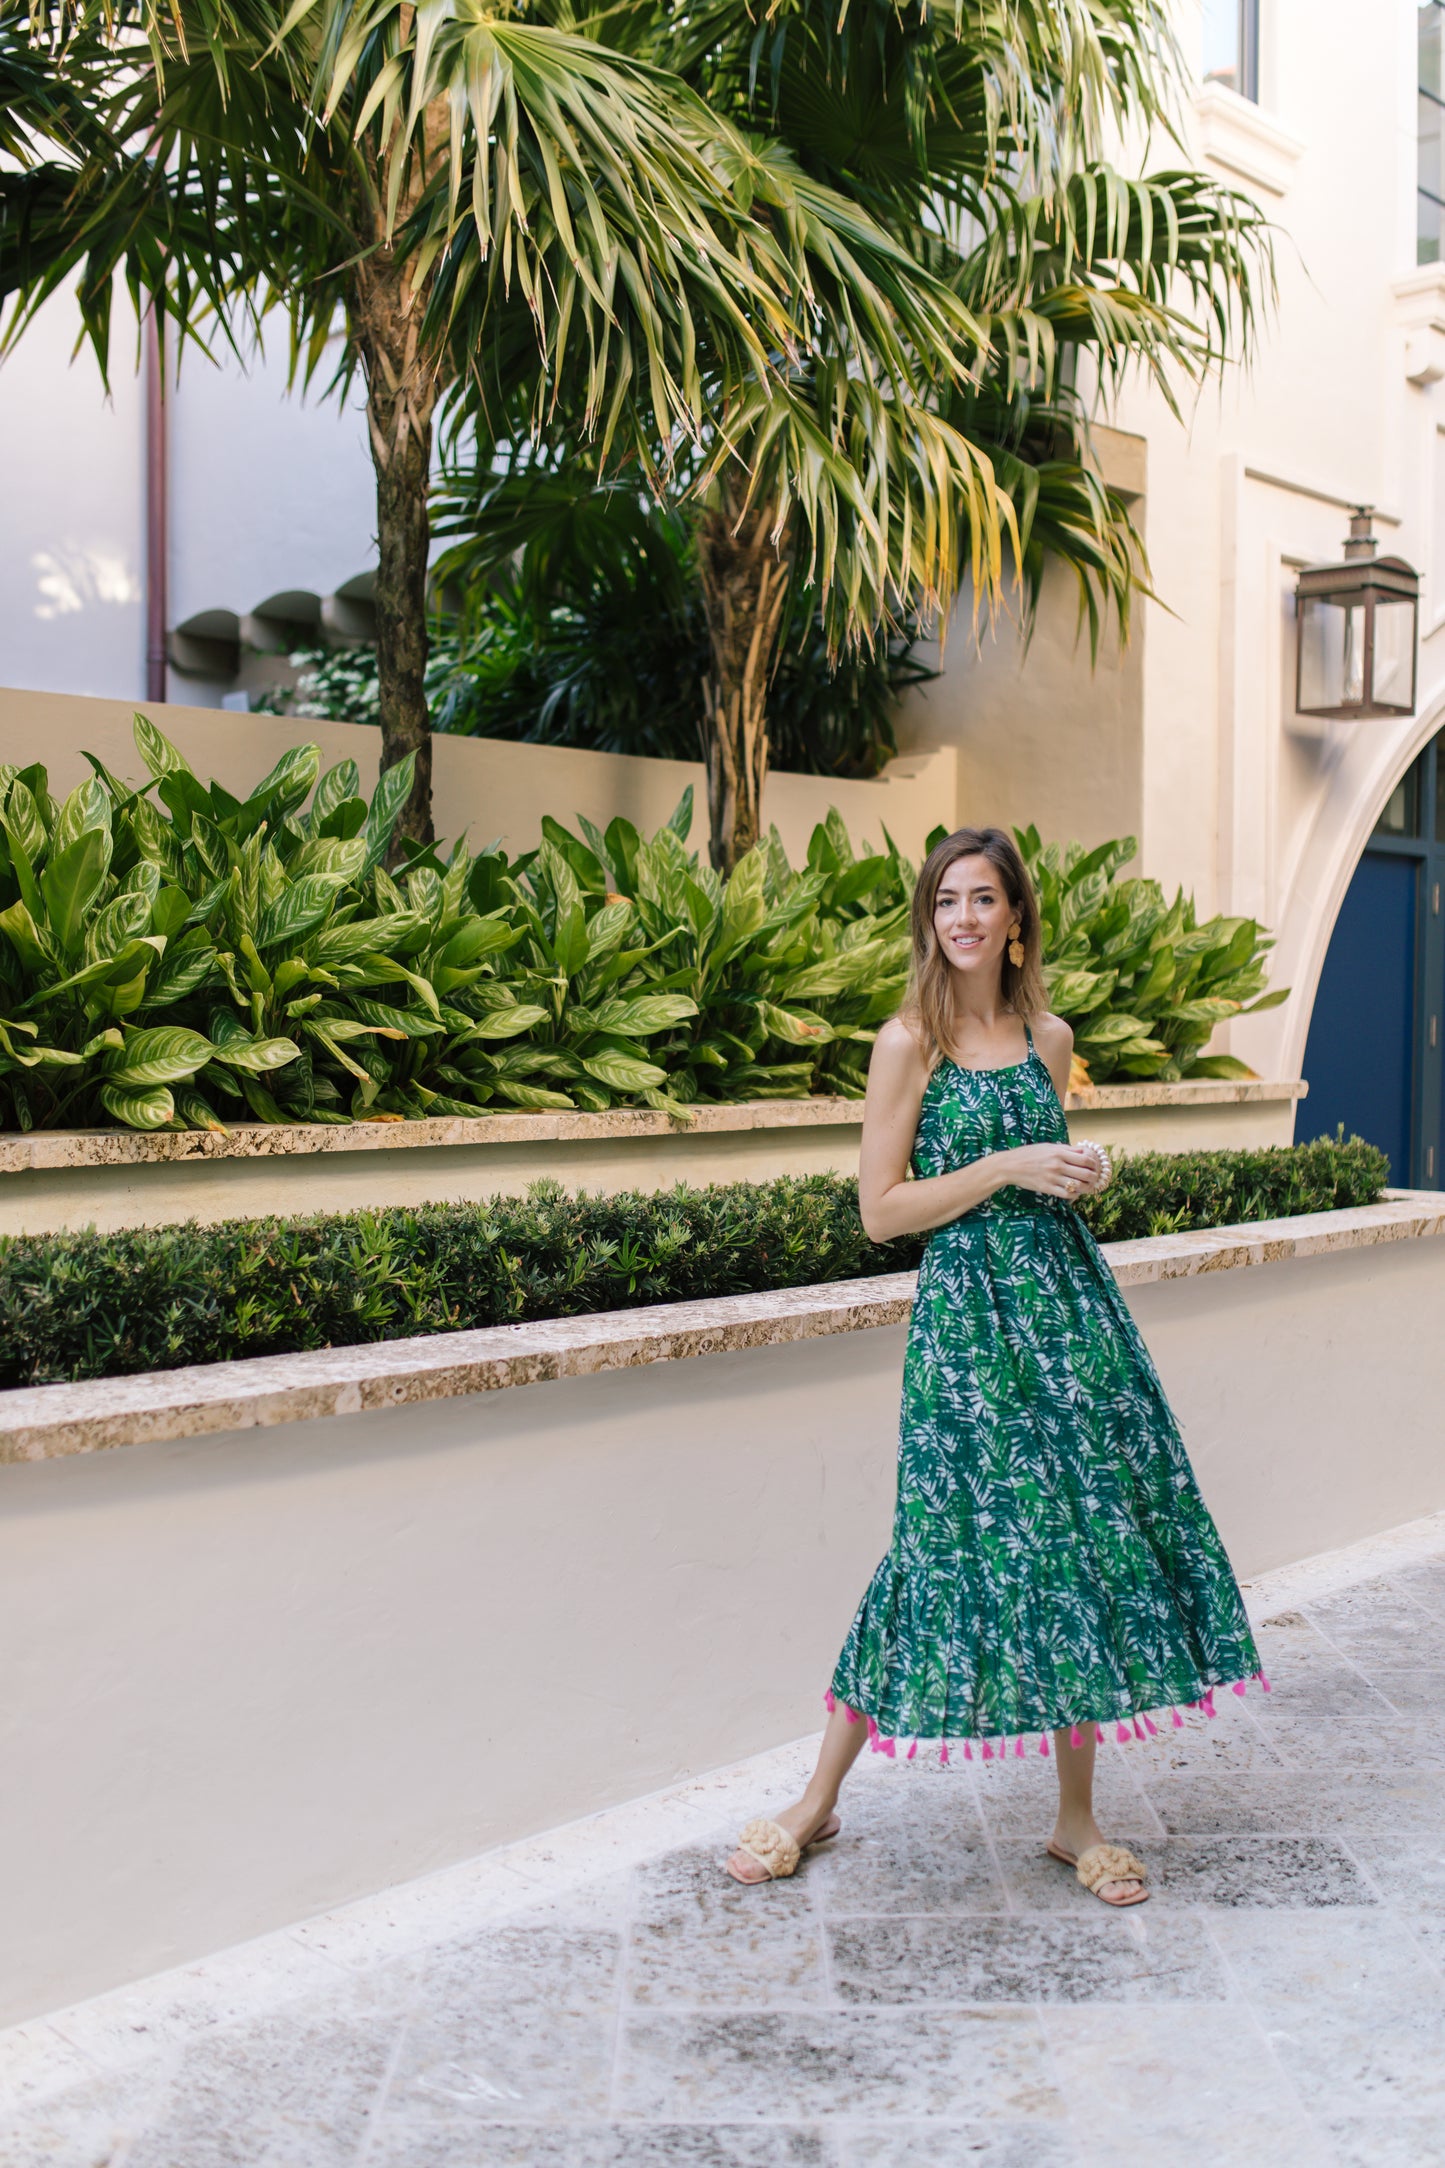 Chantal Women's Sundress Emerald Palm